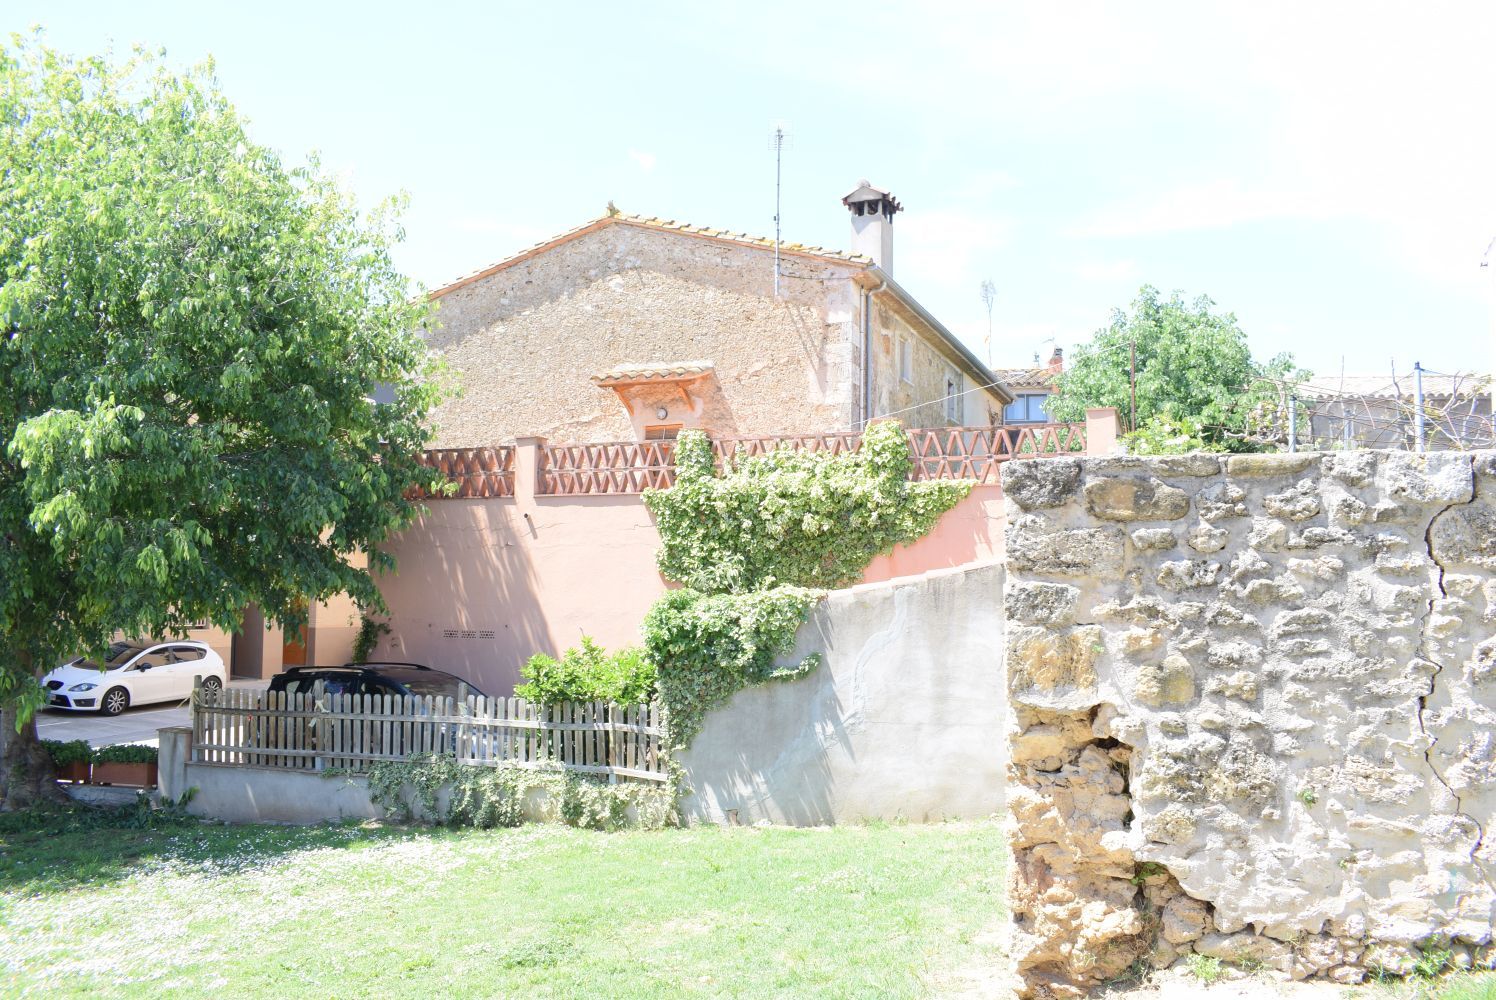 Country house in the village of Cornella del Terri